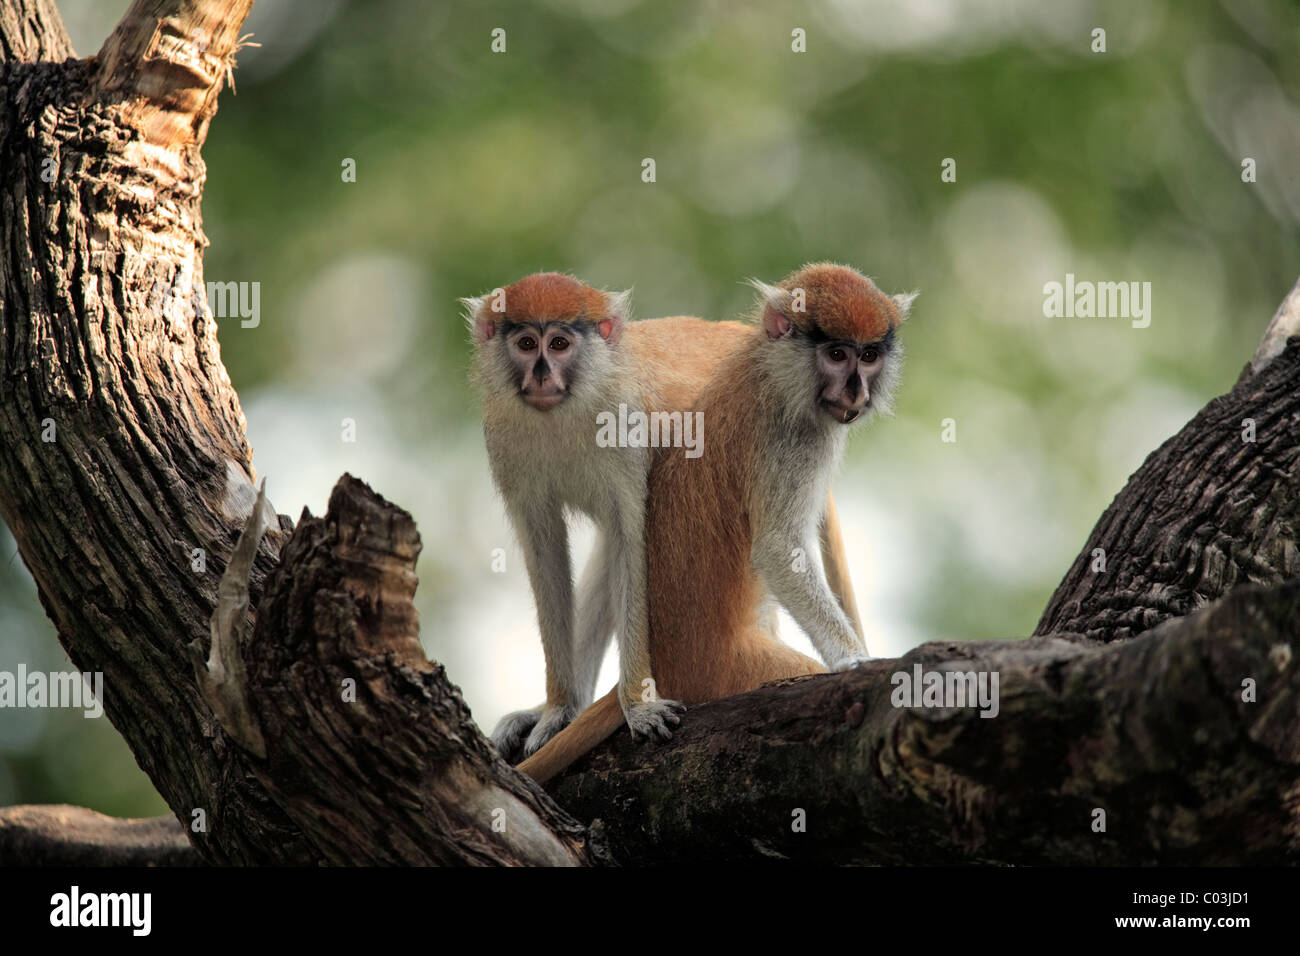 Patas (Erythrocebus patas singe), deux mineurs dans une arborescence, la Gambie, Afrique Banque D'Images